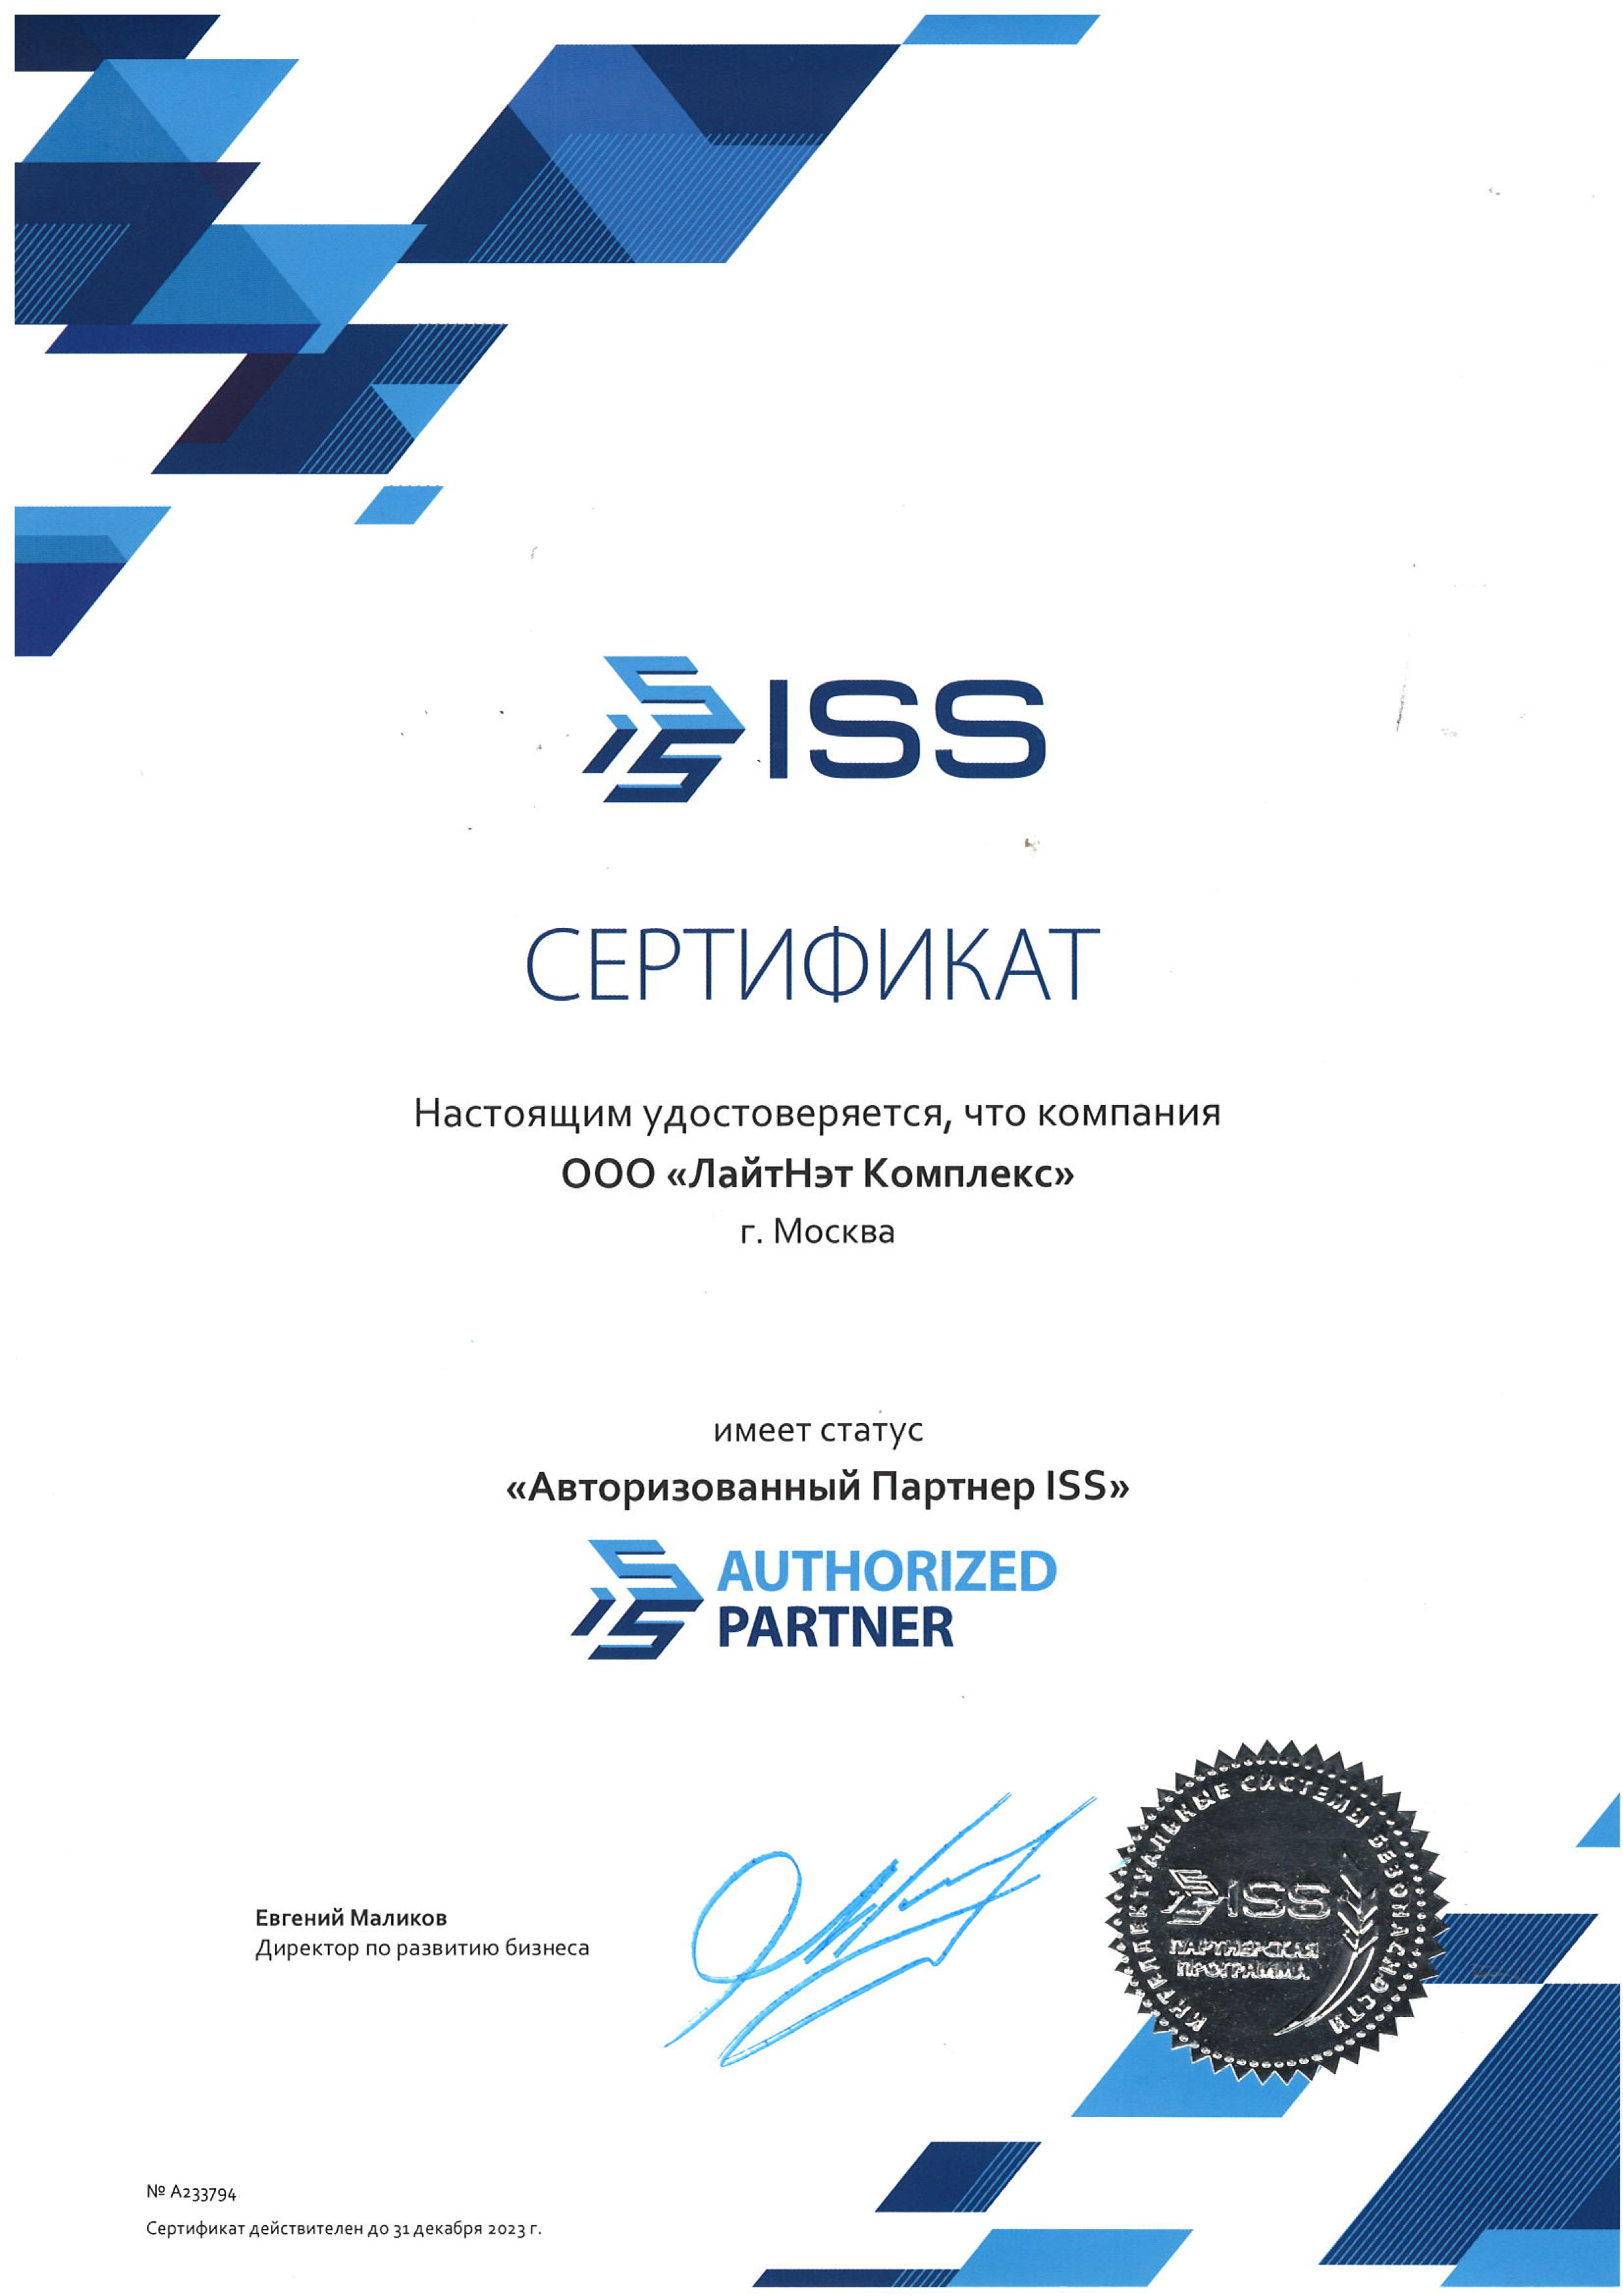 ISS - Авторизованный партнер